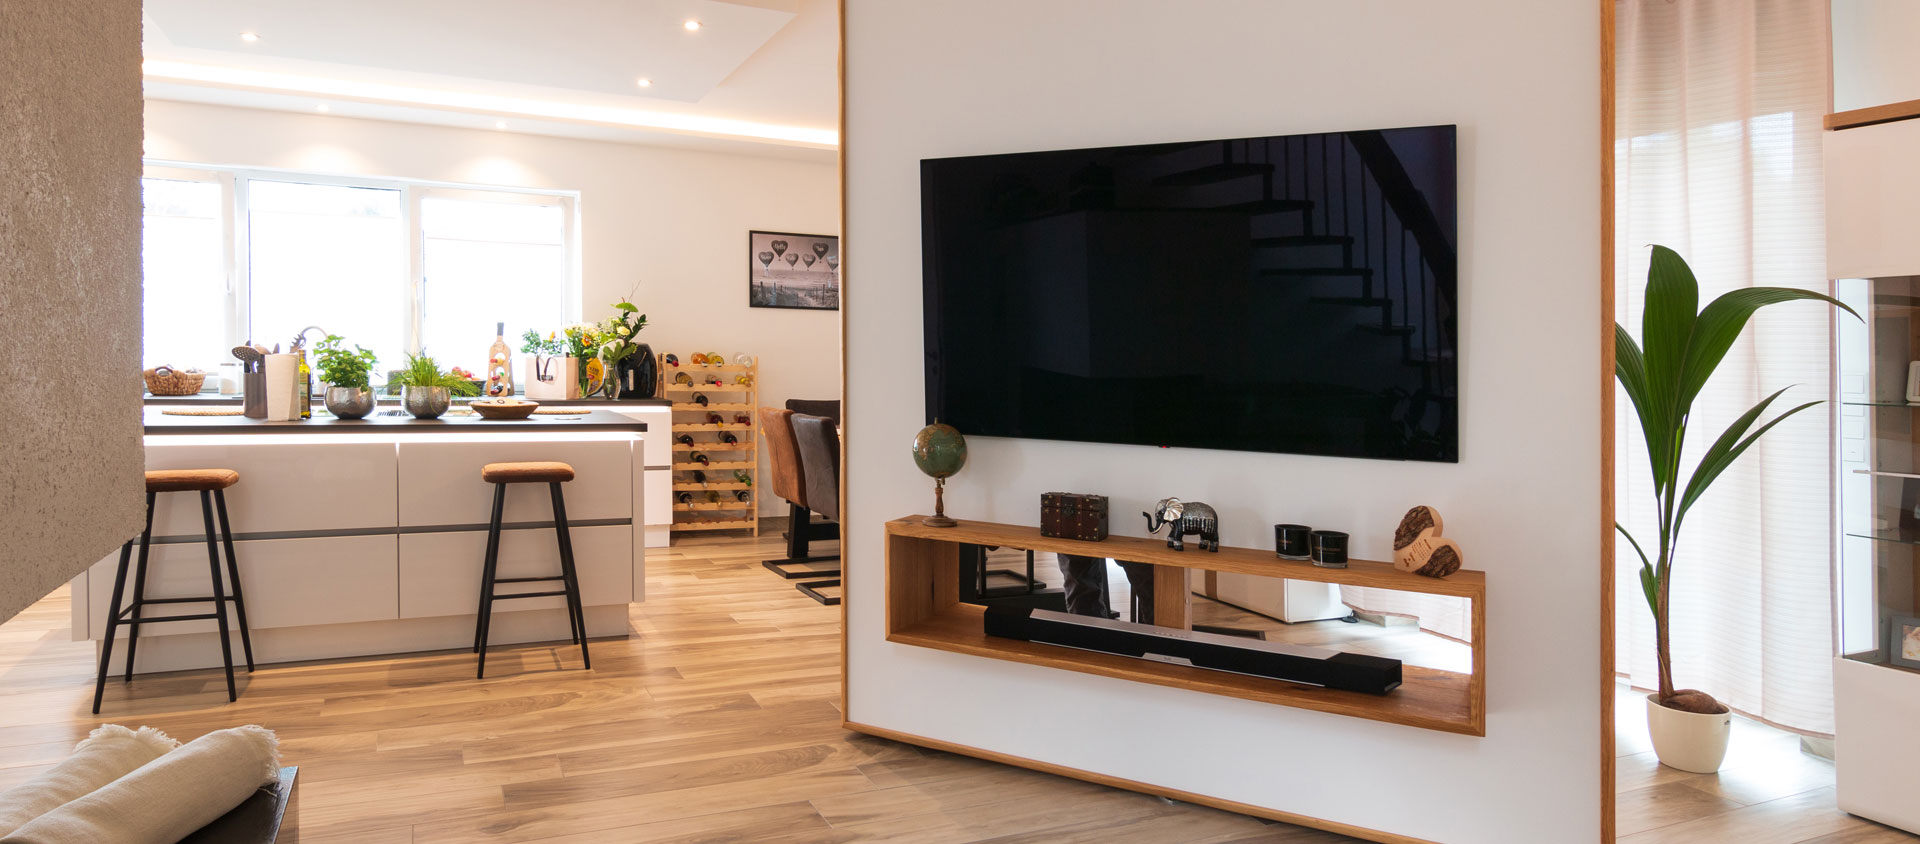 Wohnhaus mit flexiblem Fernseh-Feeling